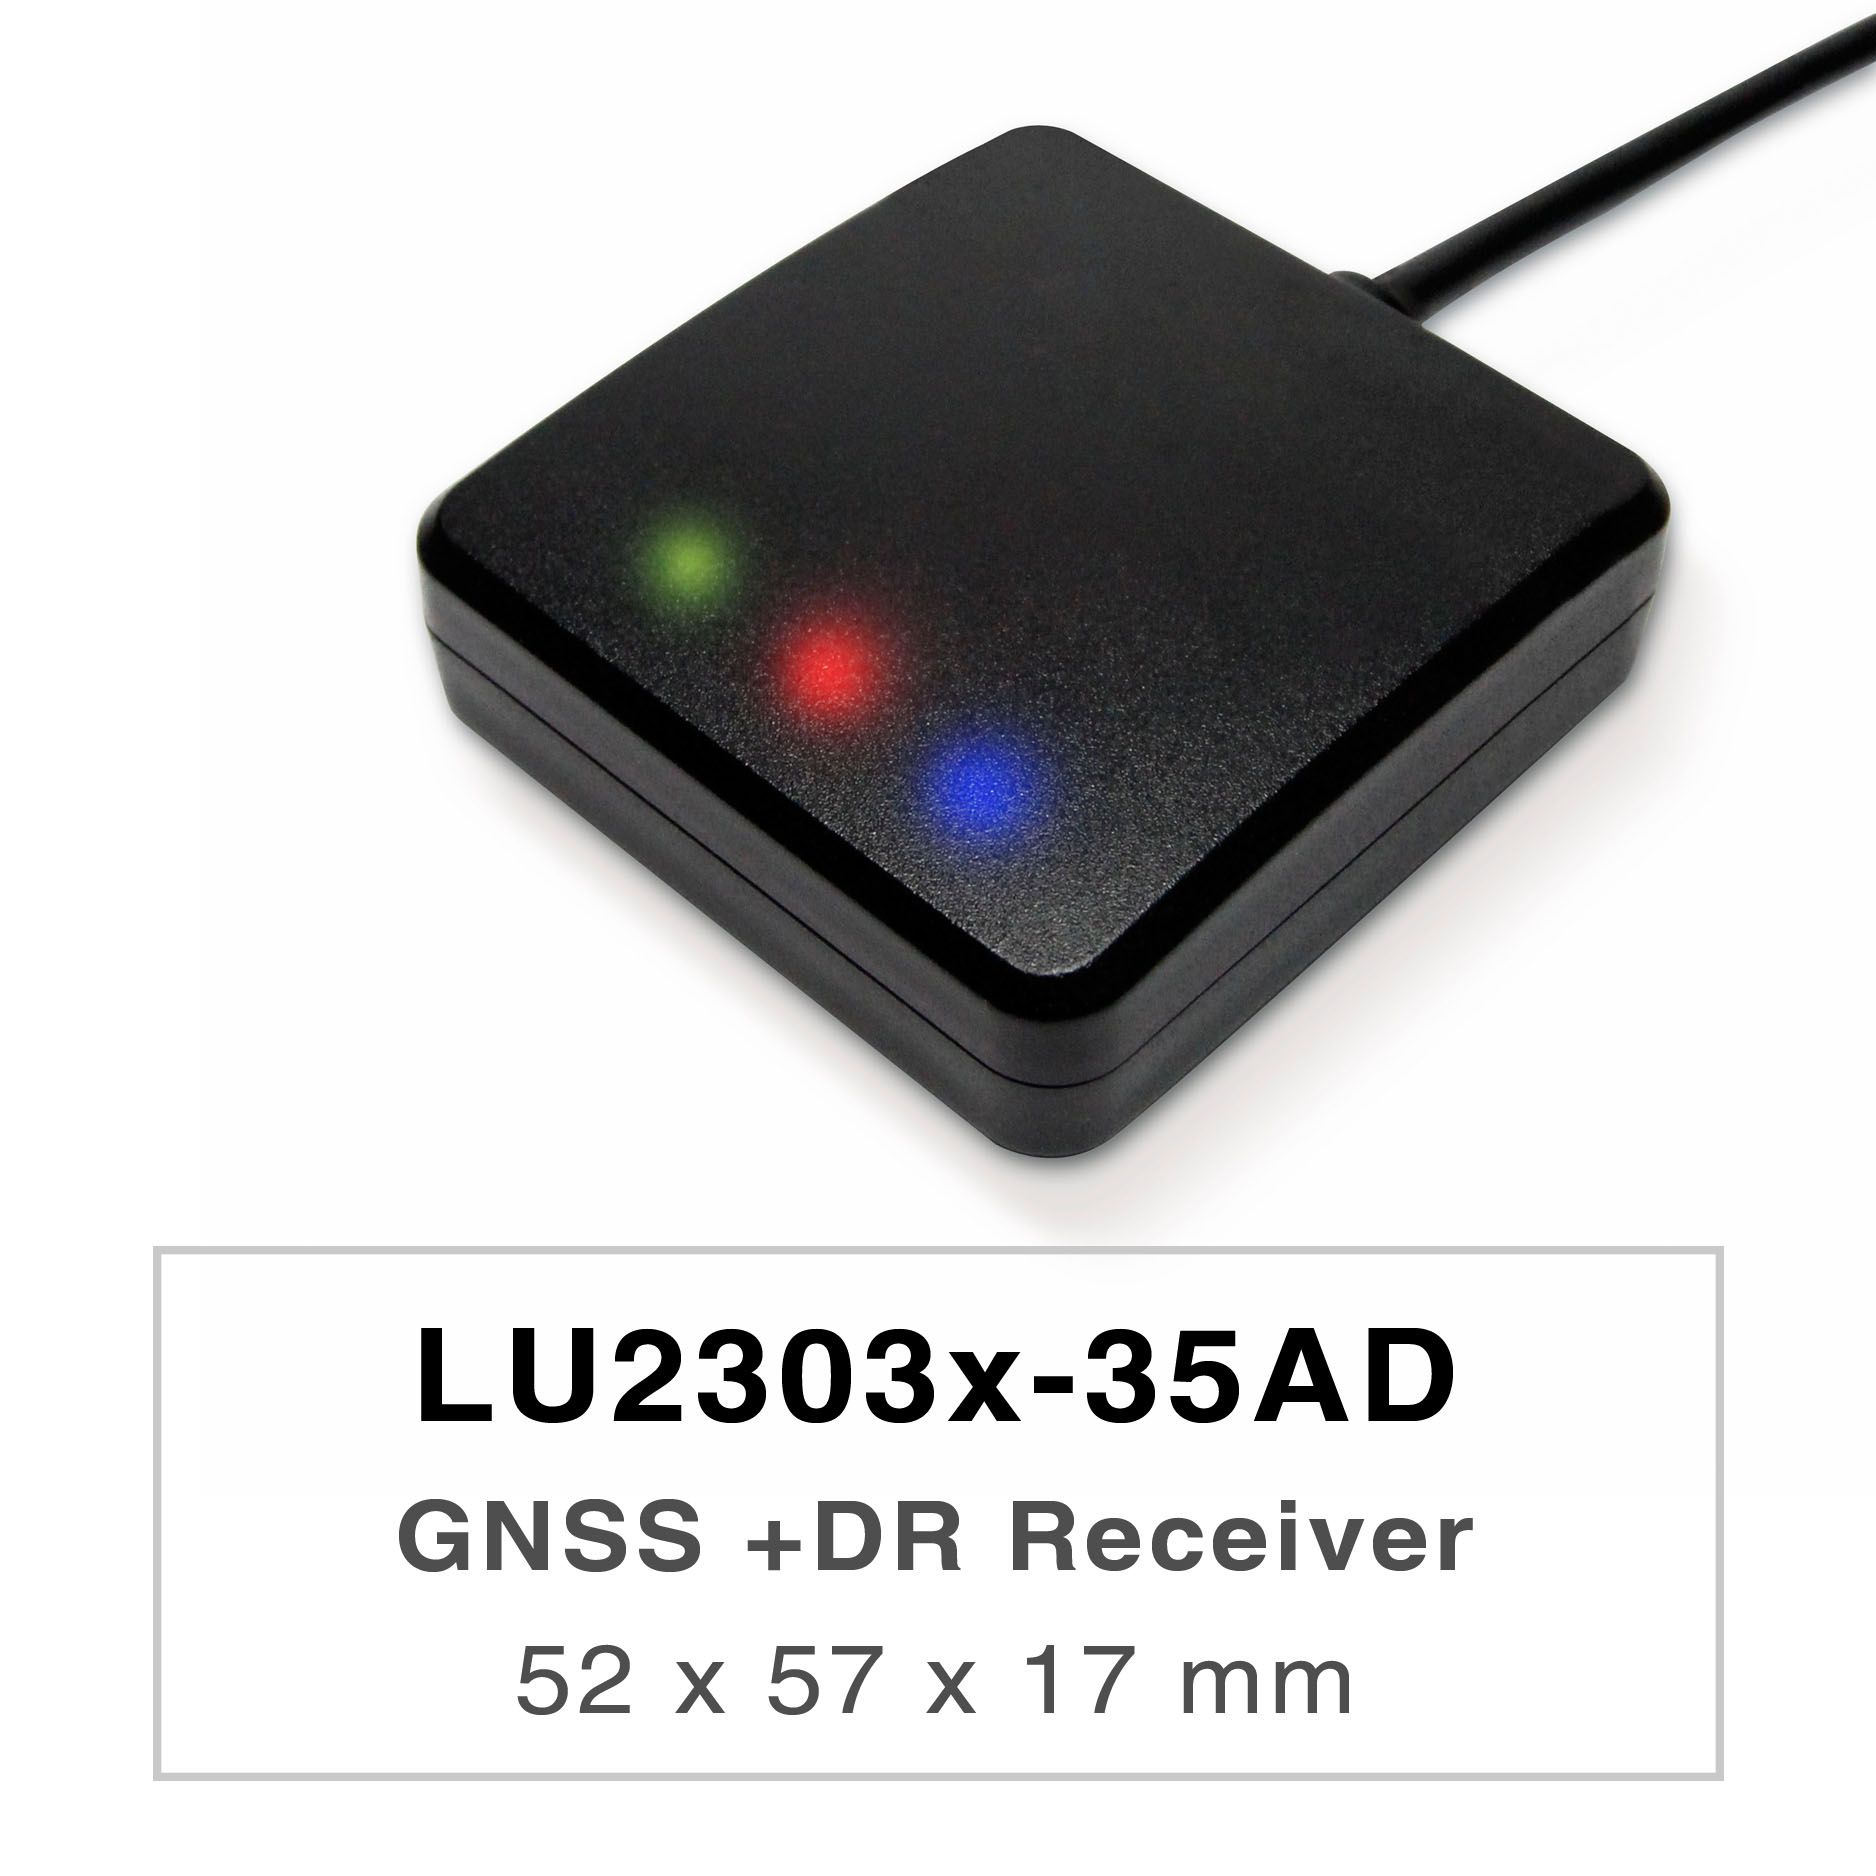 LU2303x-35ADシリーズの製品は、高性能なデュアルバンドGNSS UDR（Untethered Dead Reckoning）レシーバー（GNSSマウスとも呼ばれる）で、全世界の民間航法システム（GPS、GLONASS、BDS、GALILEO、QZSS）を追跡することができます。GNSSマウスは、L1とL5の信号を同時に取得し、より優れた位置精度を提供します。